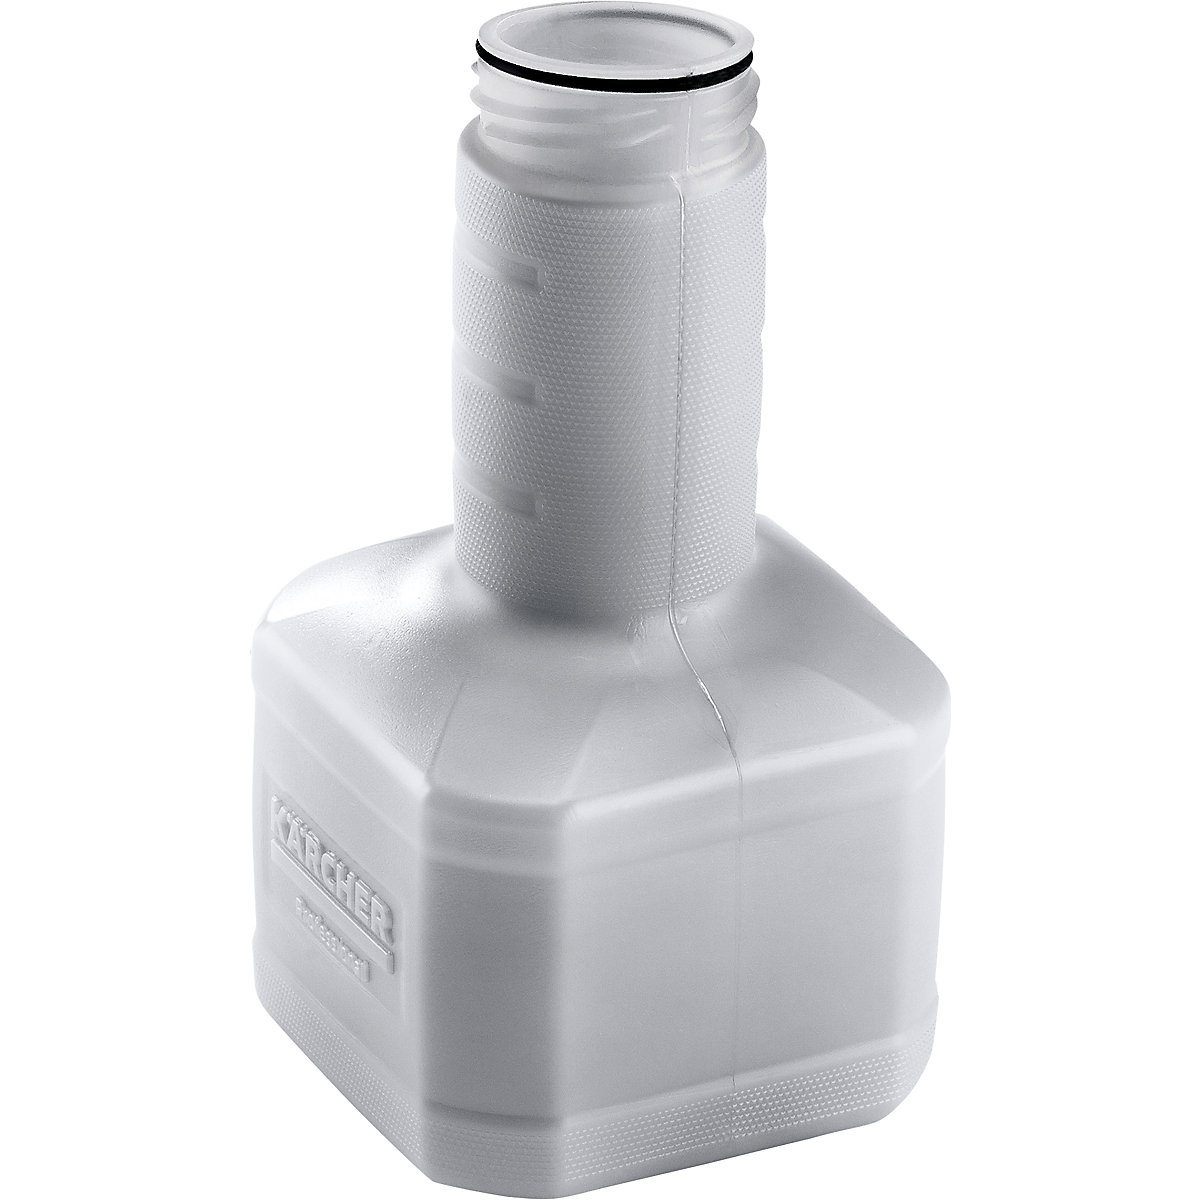 Serbatoio per detergente per lancia schiuma – Kärcher, grigio, capacità 1 l, a partire da 3 pz.-1